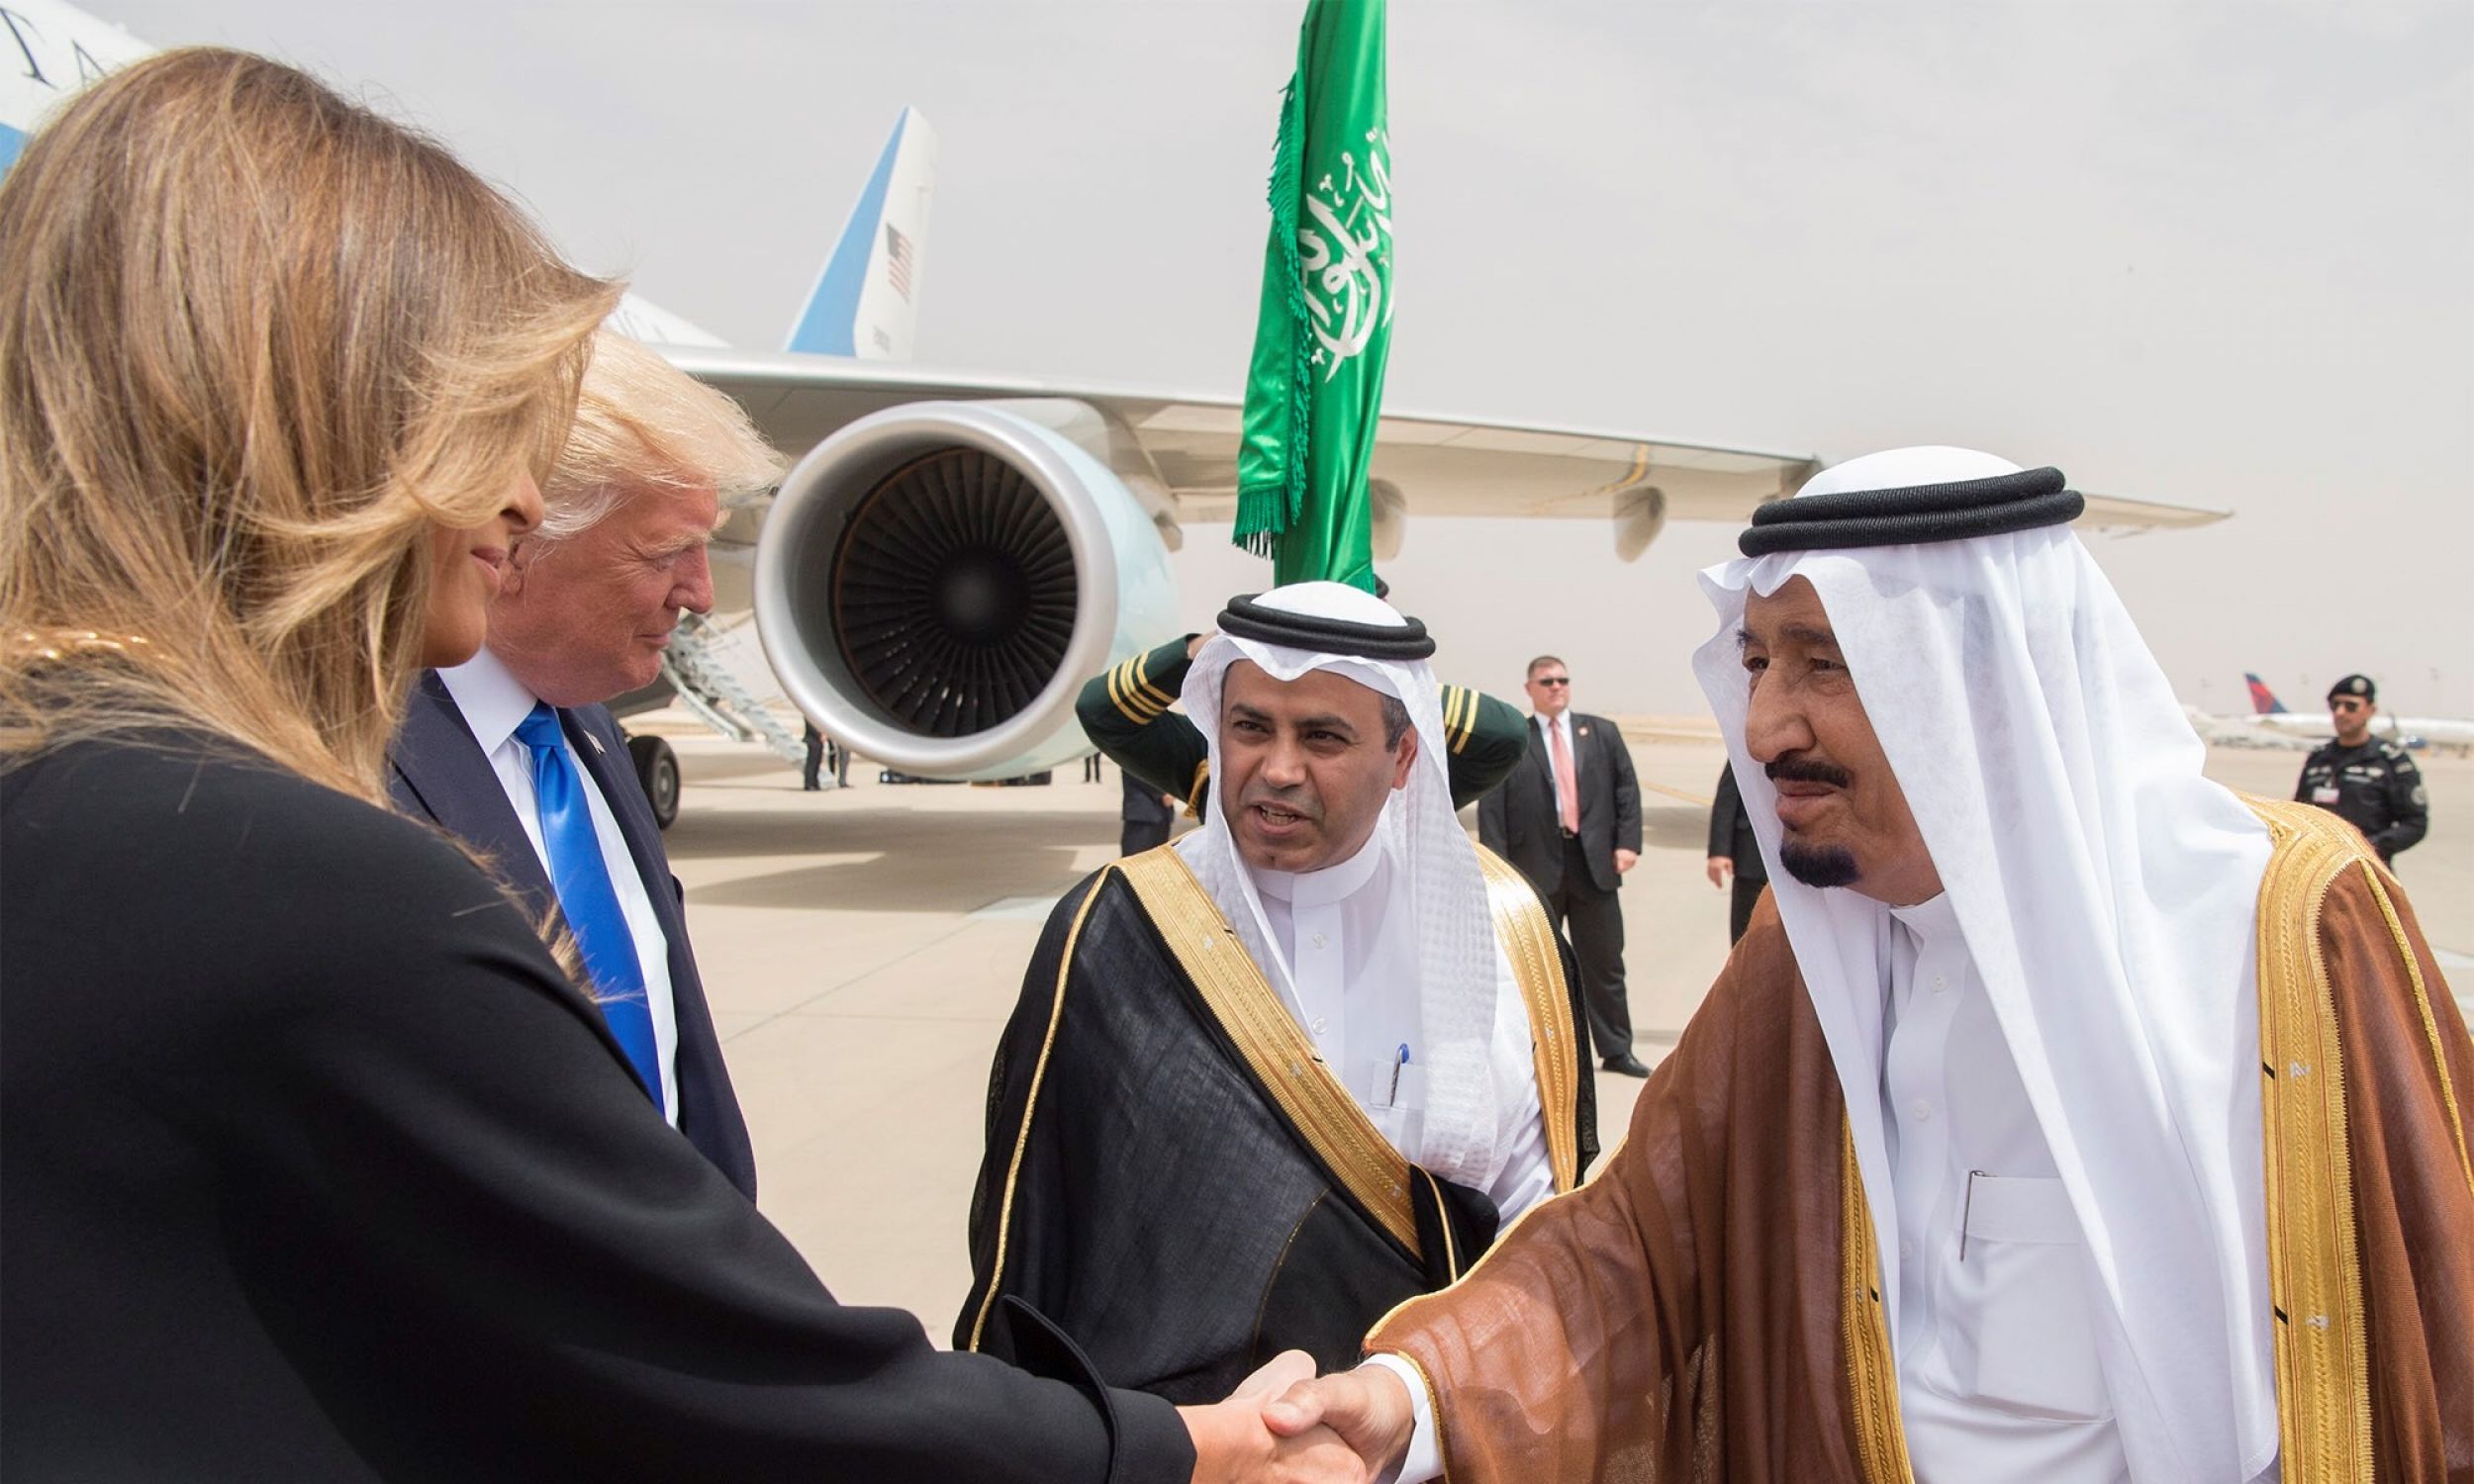 Podczas ubiegłorocznej wizyty Donalda Trumpa w Arabii Saudyjskiej król Salman bin Abdul Aziz uścisnął dłoń Melanii Trump.  Fot. Bandar Algaloud / Saudi Royal Council /Getty Images